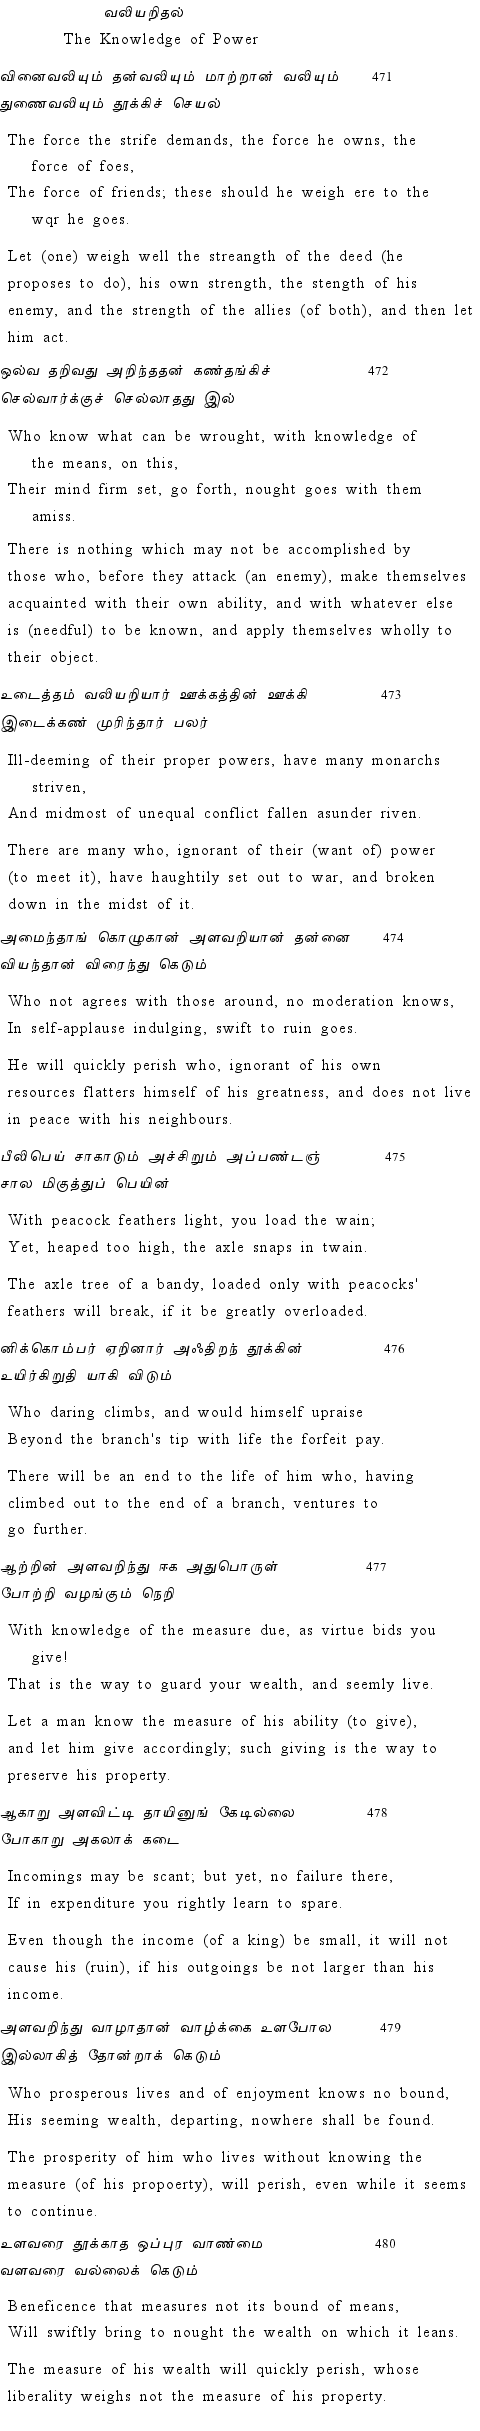 Text of Adhikaram 48